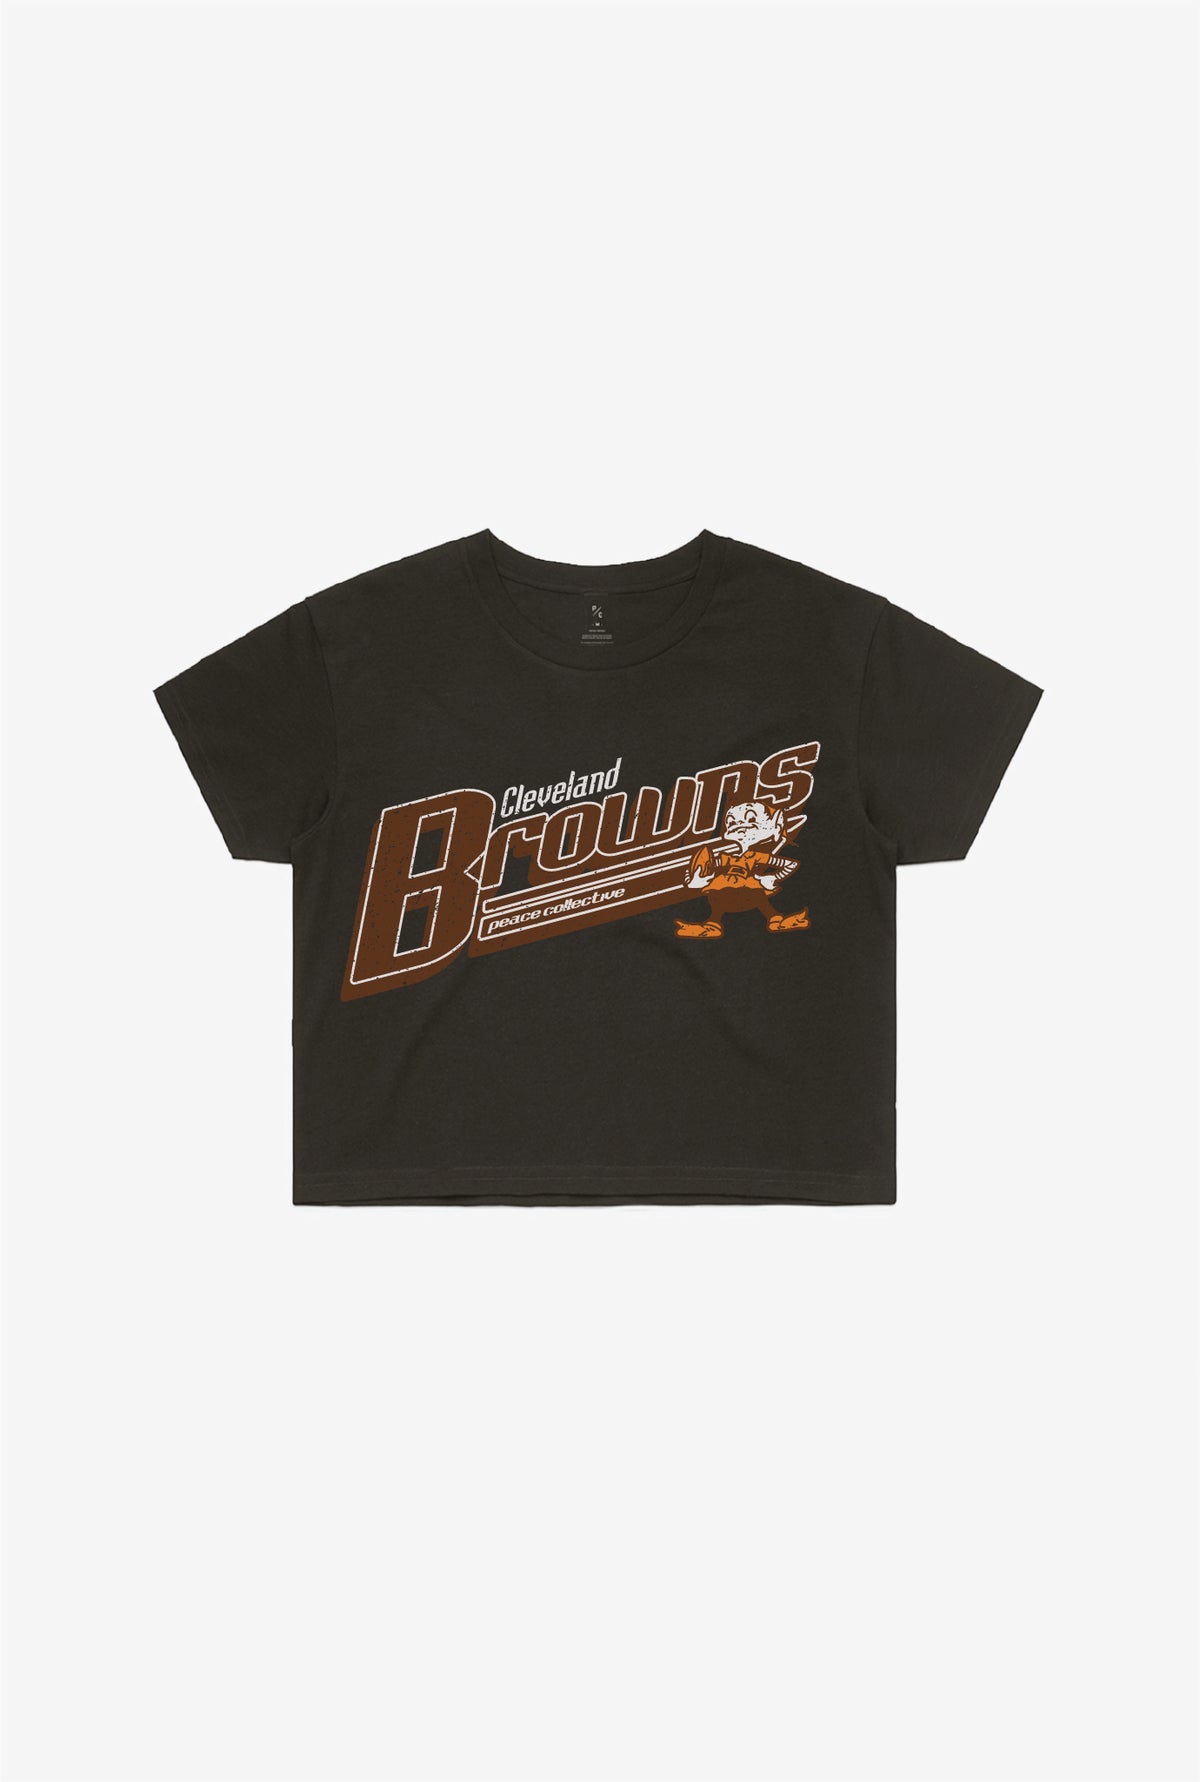 Cleveland Browns Vintage Cropped T-Shirt - Black